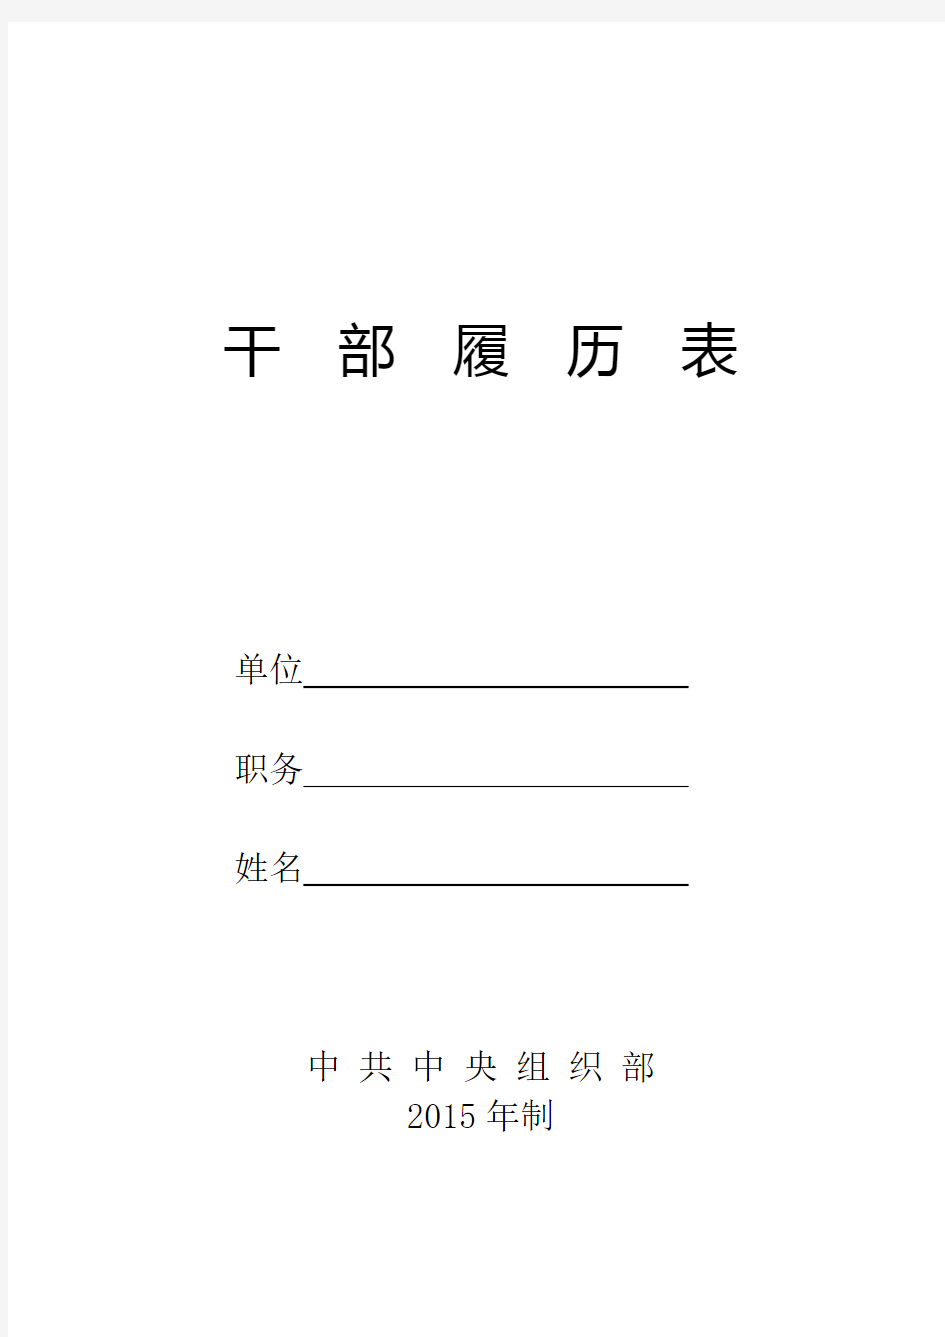 干部履历表(2015年版)中共中央组织部